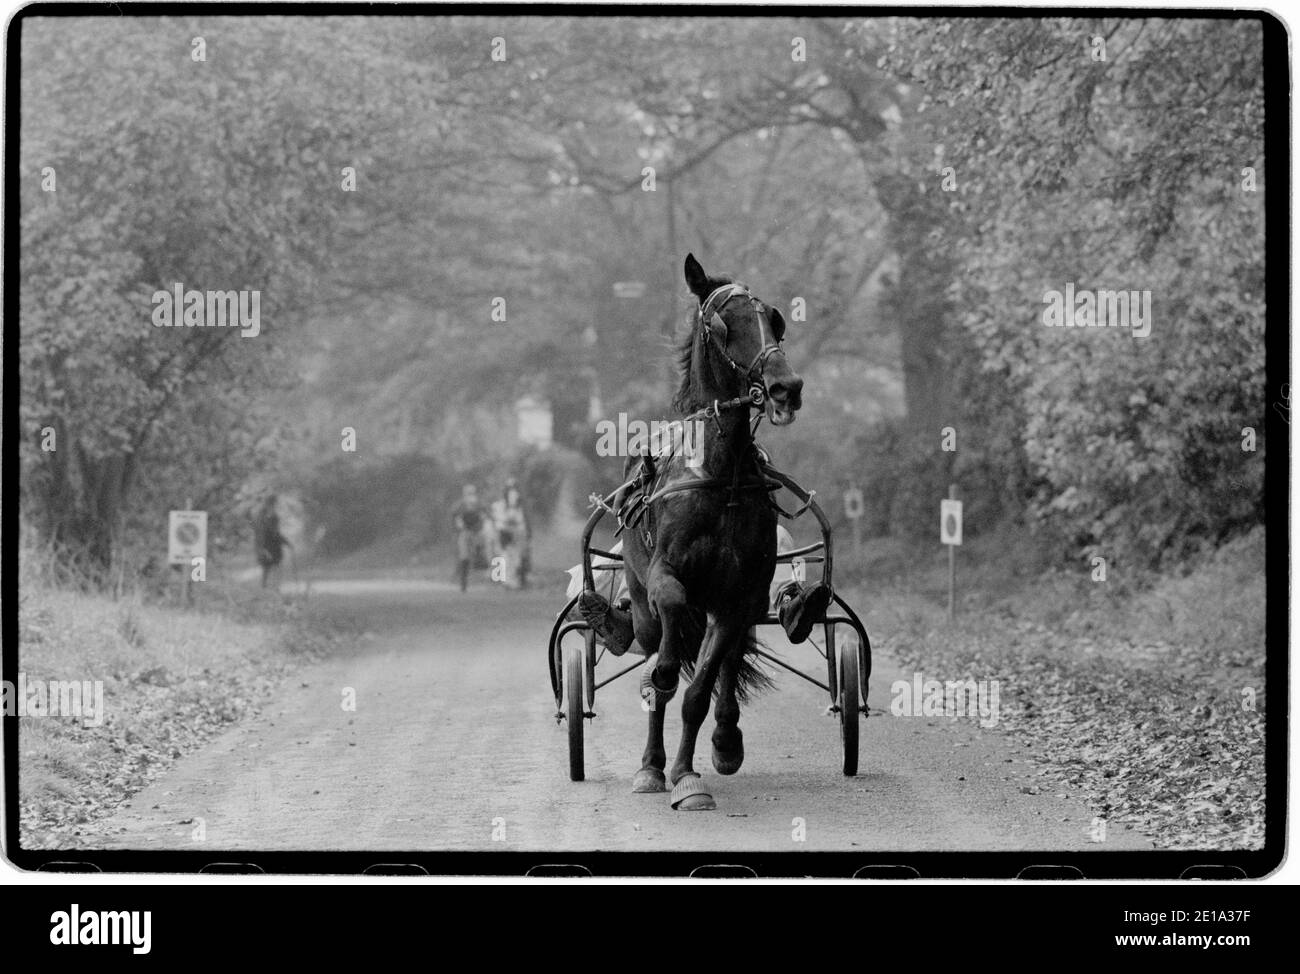 Stow on the Wold Gloucestershire England Gypsy Horse Fair octobre 1996 les chevaux sont rasés pour montrer la qualité du tuyau et du pilote. Au Royaume-Uni, il y a de nombreuses foires auxquelles participent traditionnellement les Romani et les voyageurs qui convergent aux foires pour acheter et vendre des chevaux, rencontrer des amis et des relations et célébrer leur musique, leur histoire et leur folklore. Banque D'Images